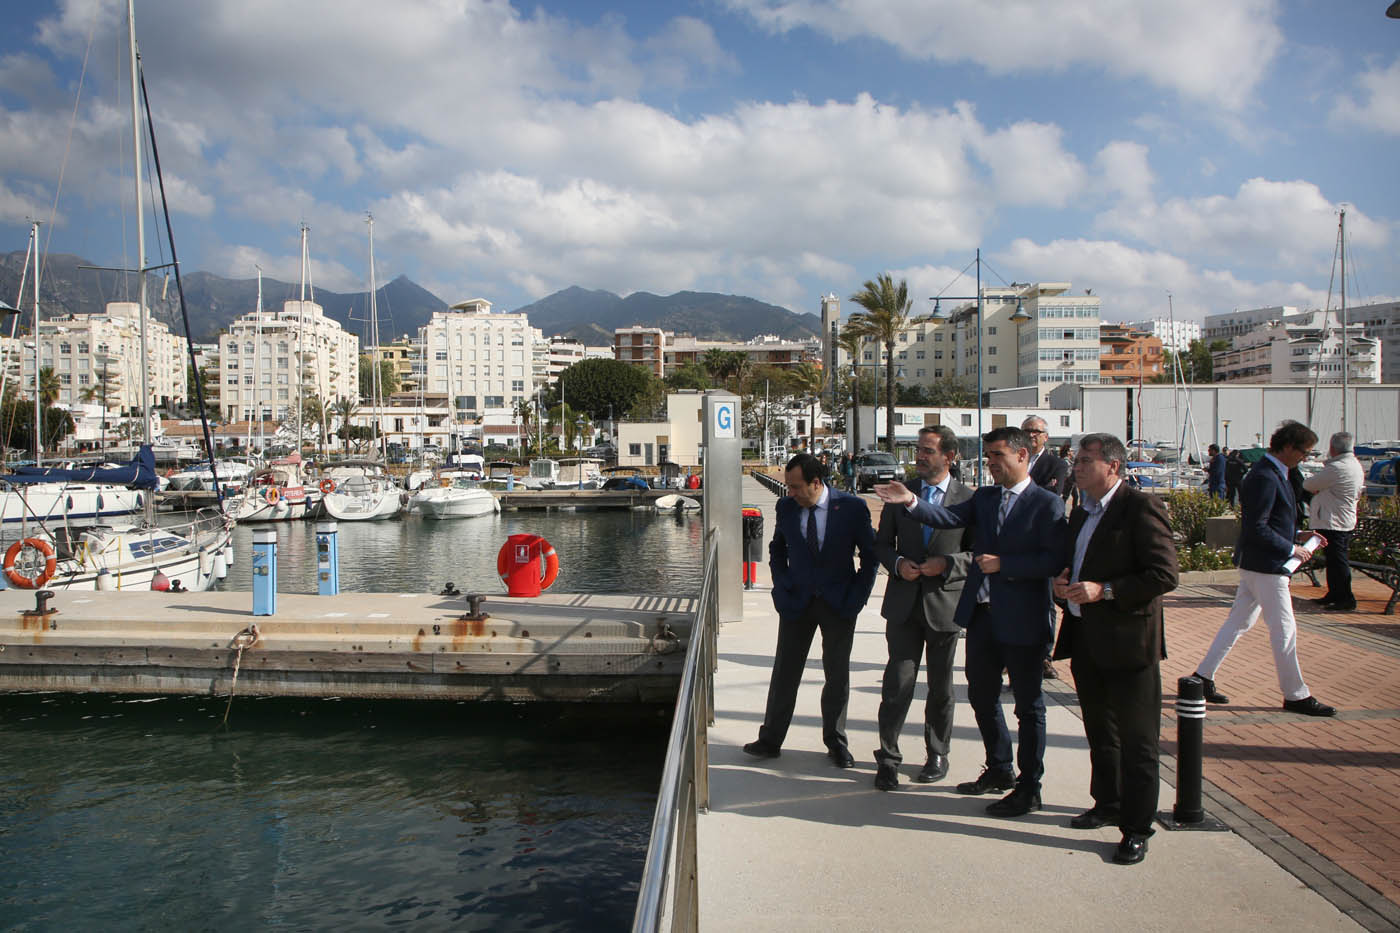 El alcalde y el consejero de Fomento visitan el Puerto de La Bajadilla y aseguran que habrá “plena colaboración” para que el proyecto de ampliación “sea una realidad”